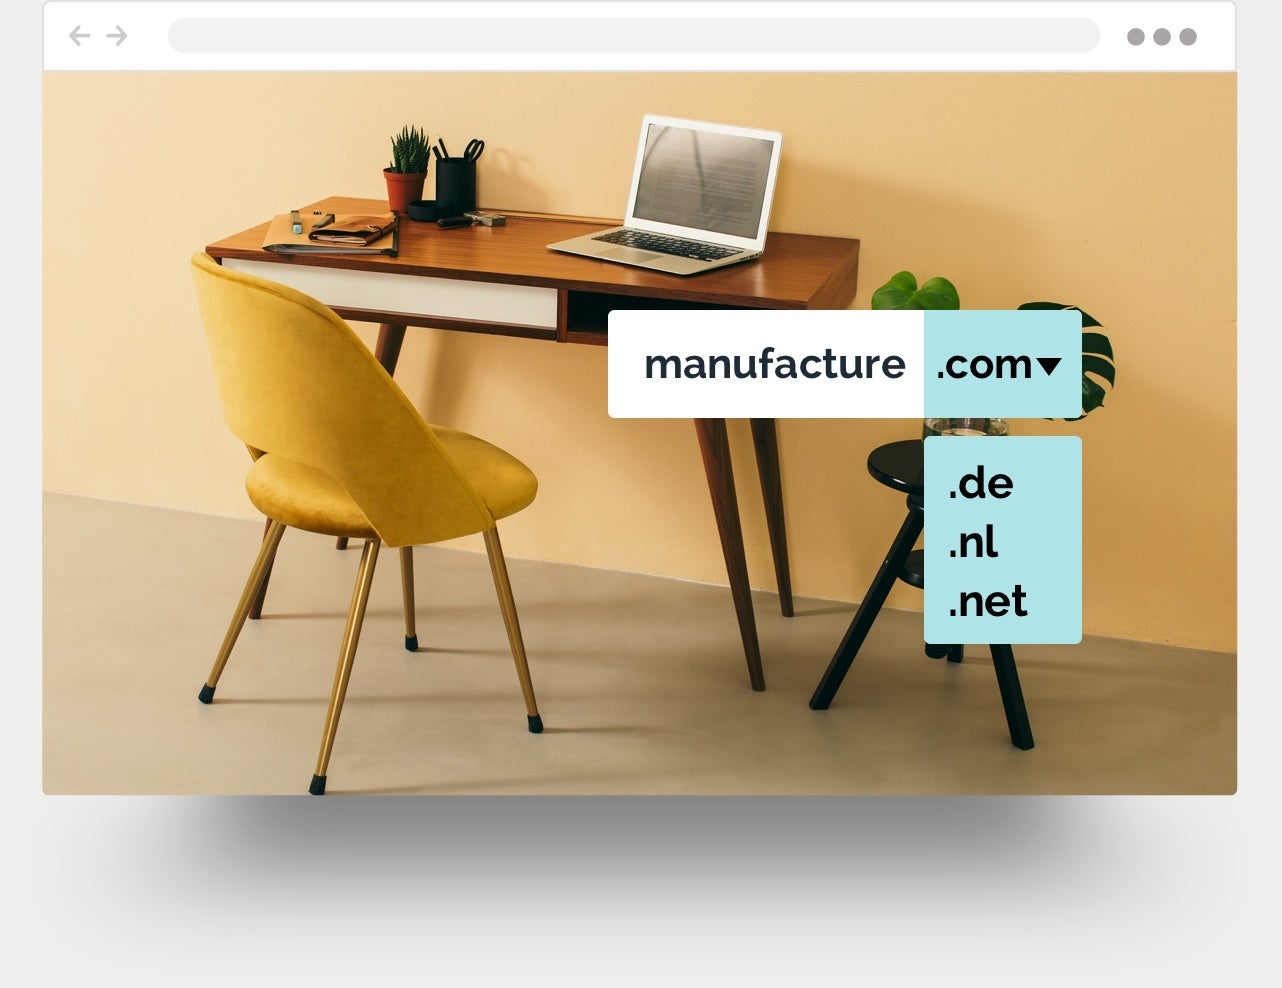 Voorbeeld van een meubelwebsite die met Jimdo gemaakt is.